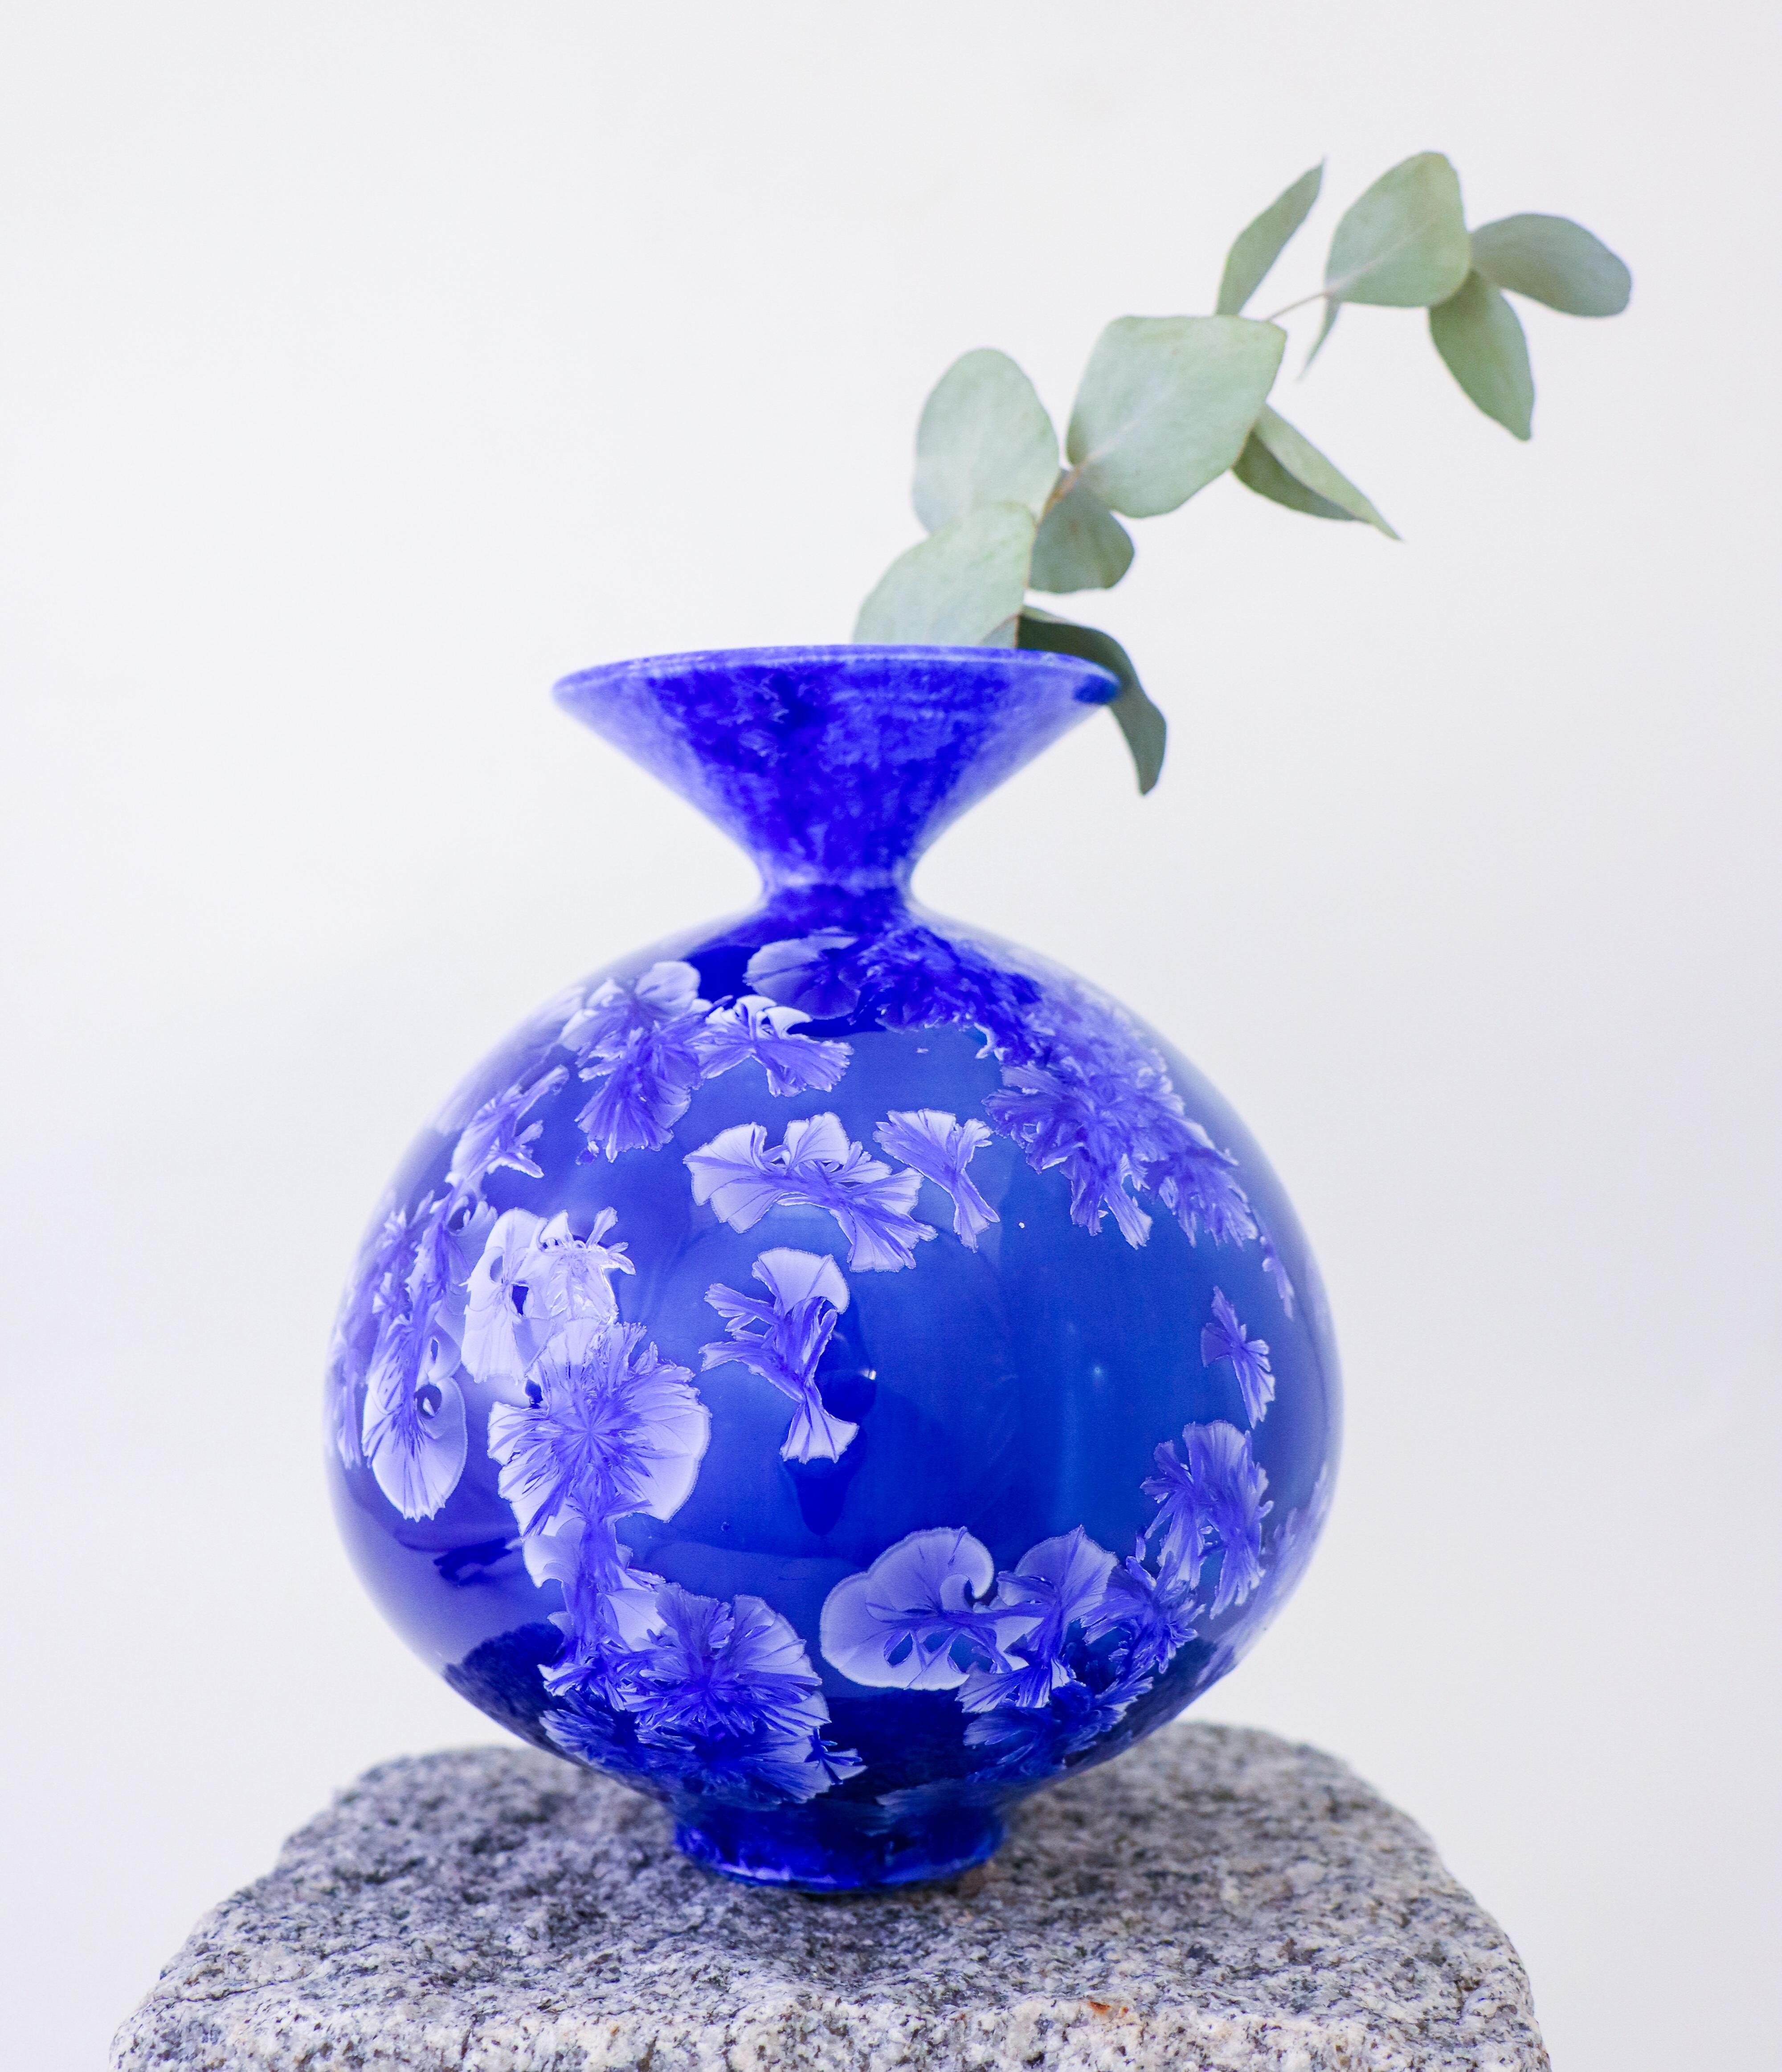 Un vase bleu avec une étonnante glaçure cristalline conçu par Isak Isaksson en Suède. Le vase mesure 17,5 cm de haut et environ 14 cm de diamètre. Il est en excellent état. Il s'agit d'un vase unique, tourné à la main par Isak Isaksson. Il est signé